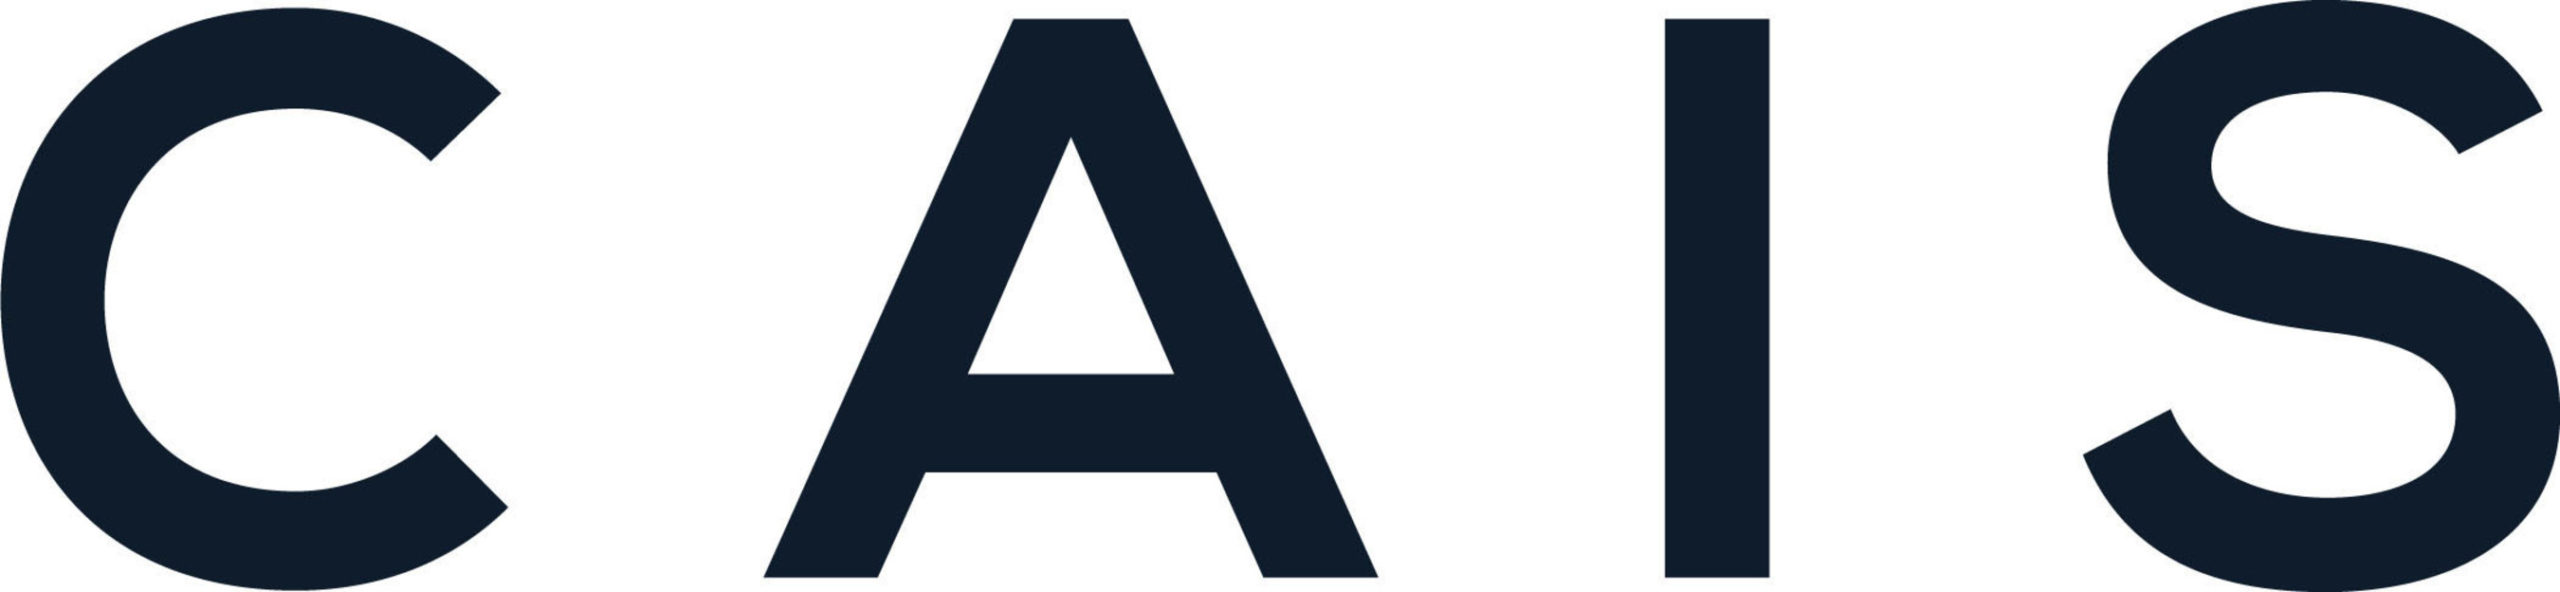 CAIS logo ALTSLA 2021